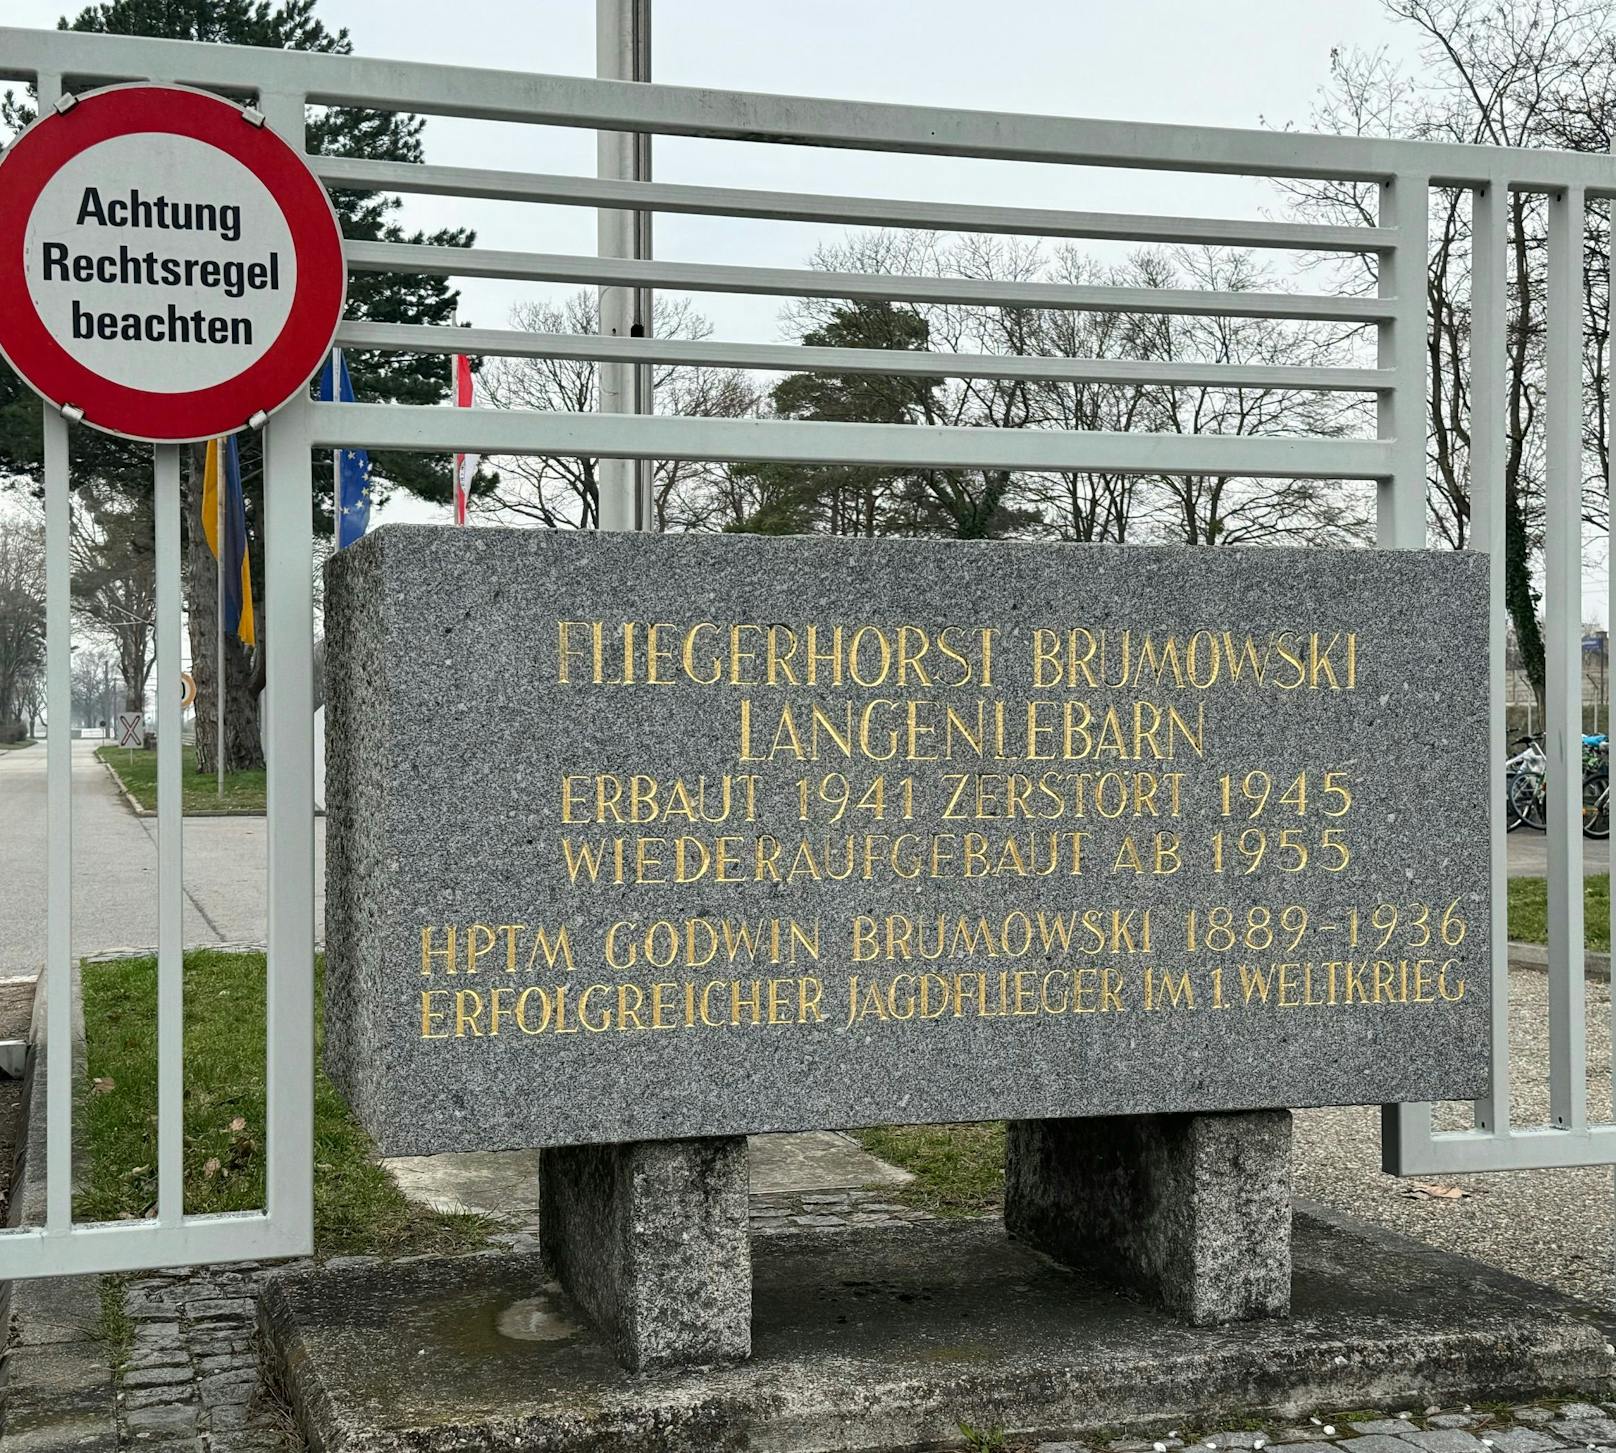 Debatte um Fliegerhorst in Langenlebarn